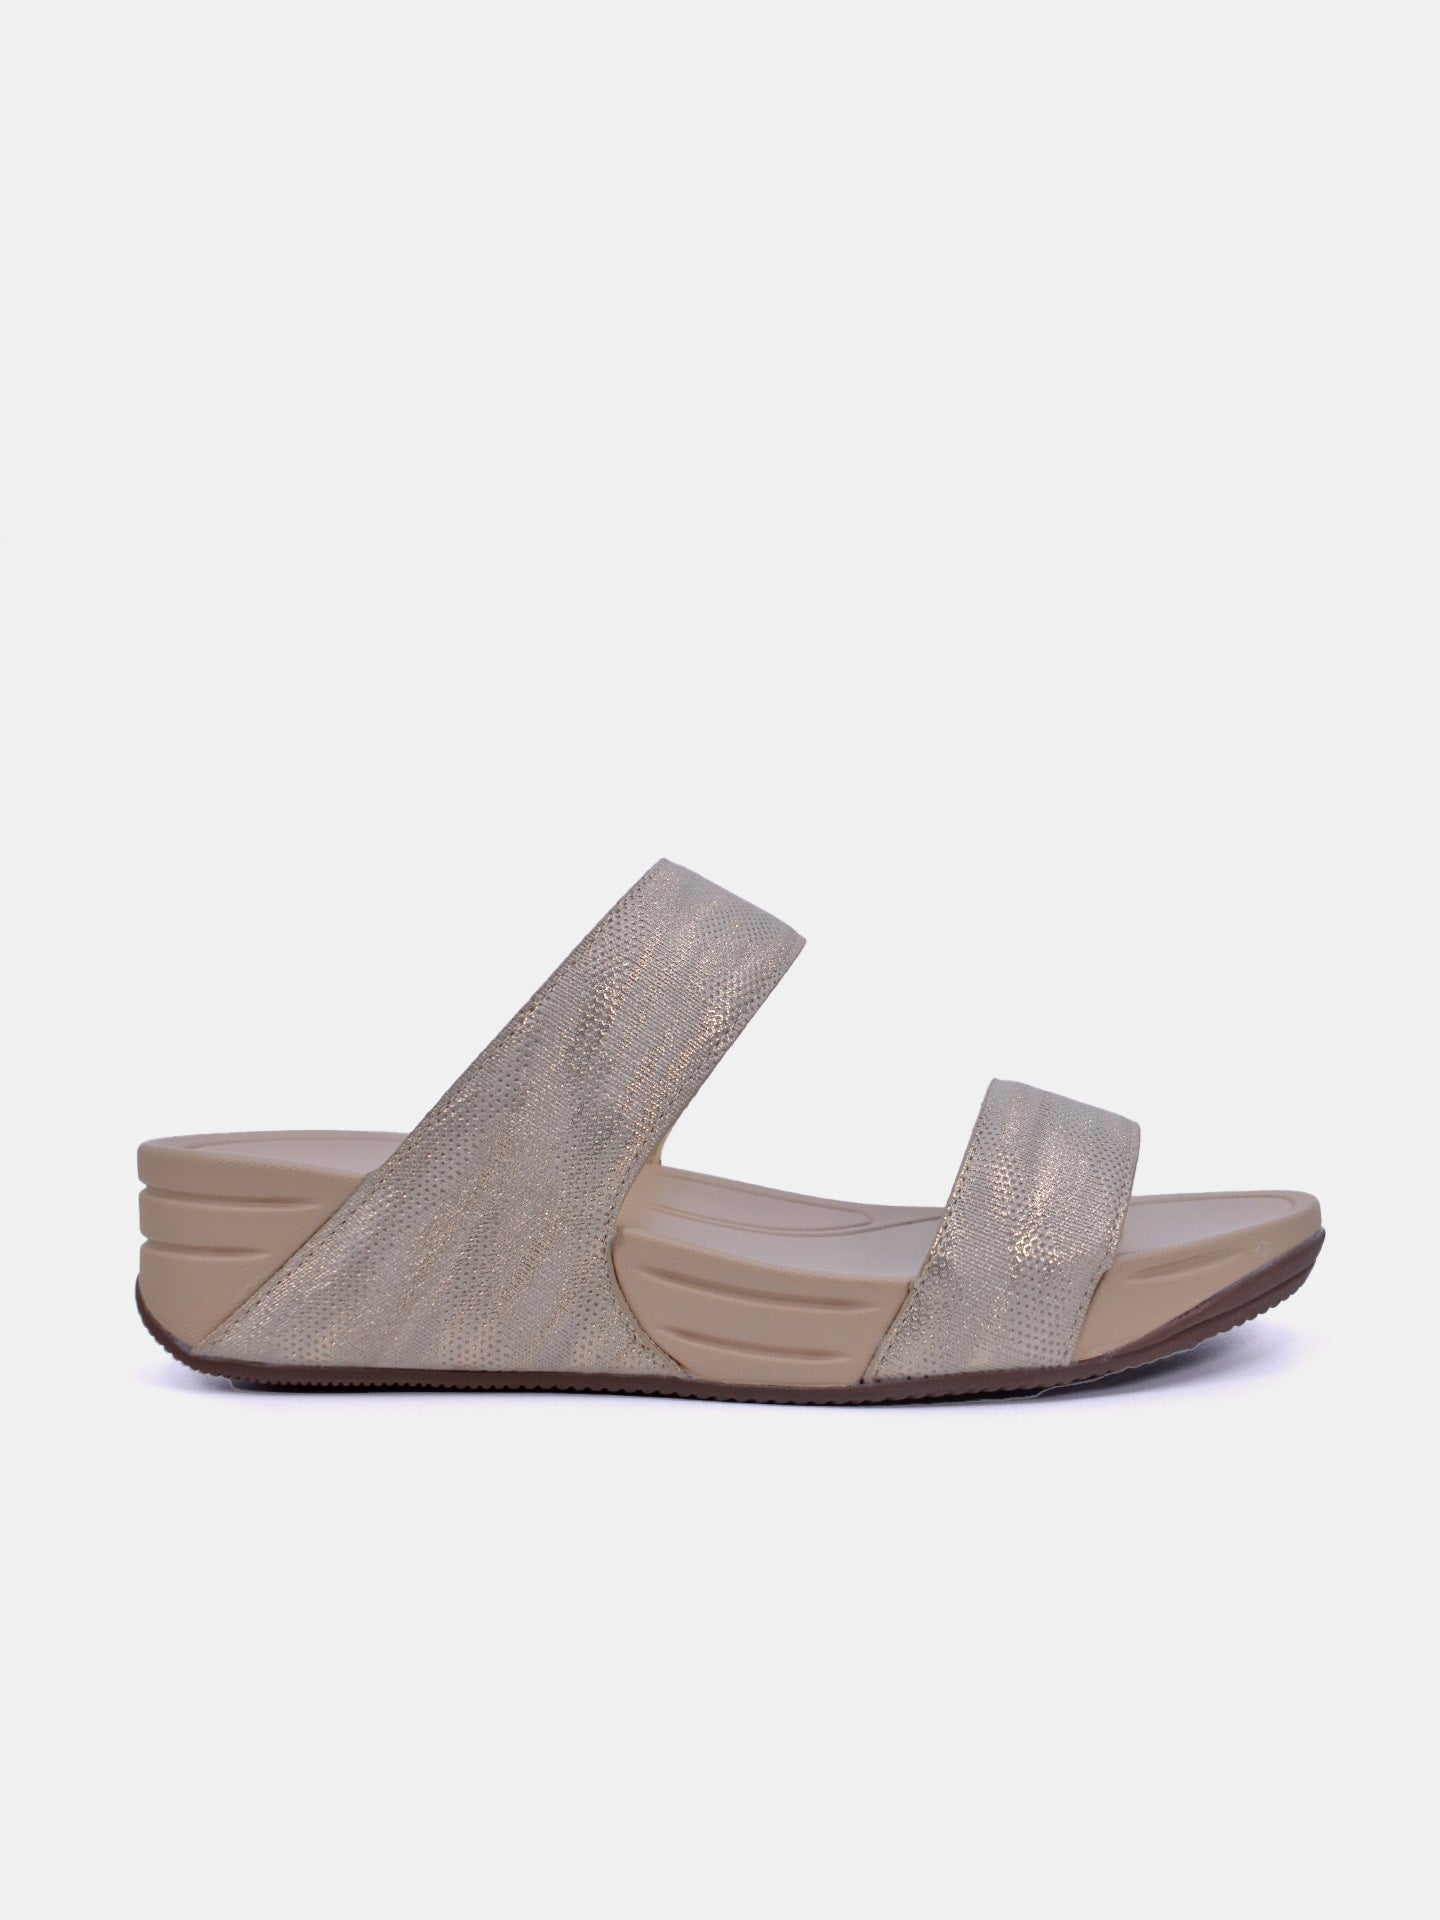 Michelle Morgan 214RJ911 Women's Sandals #color_Gold